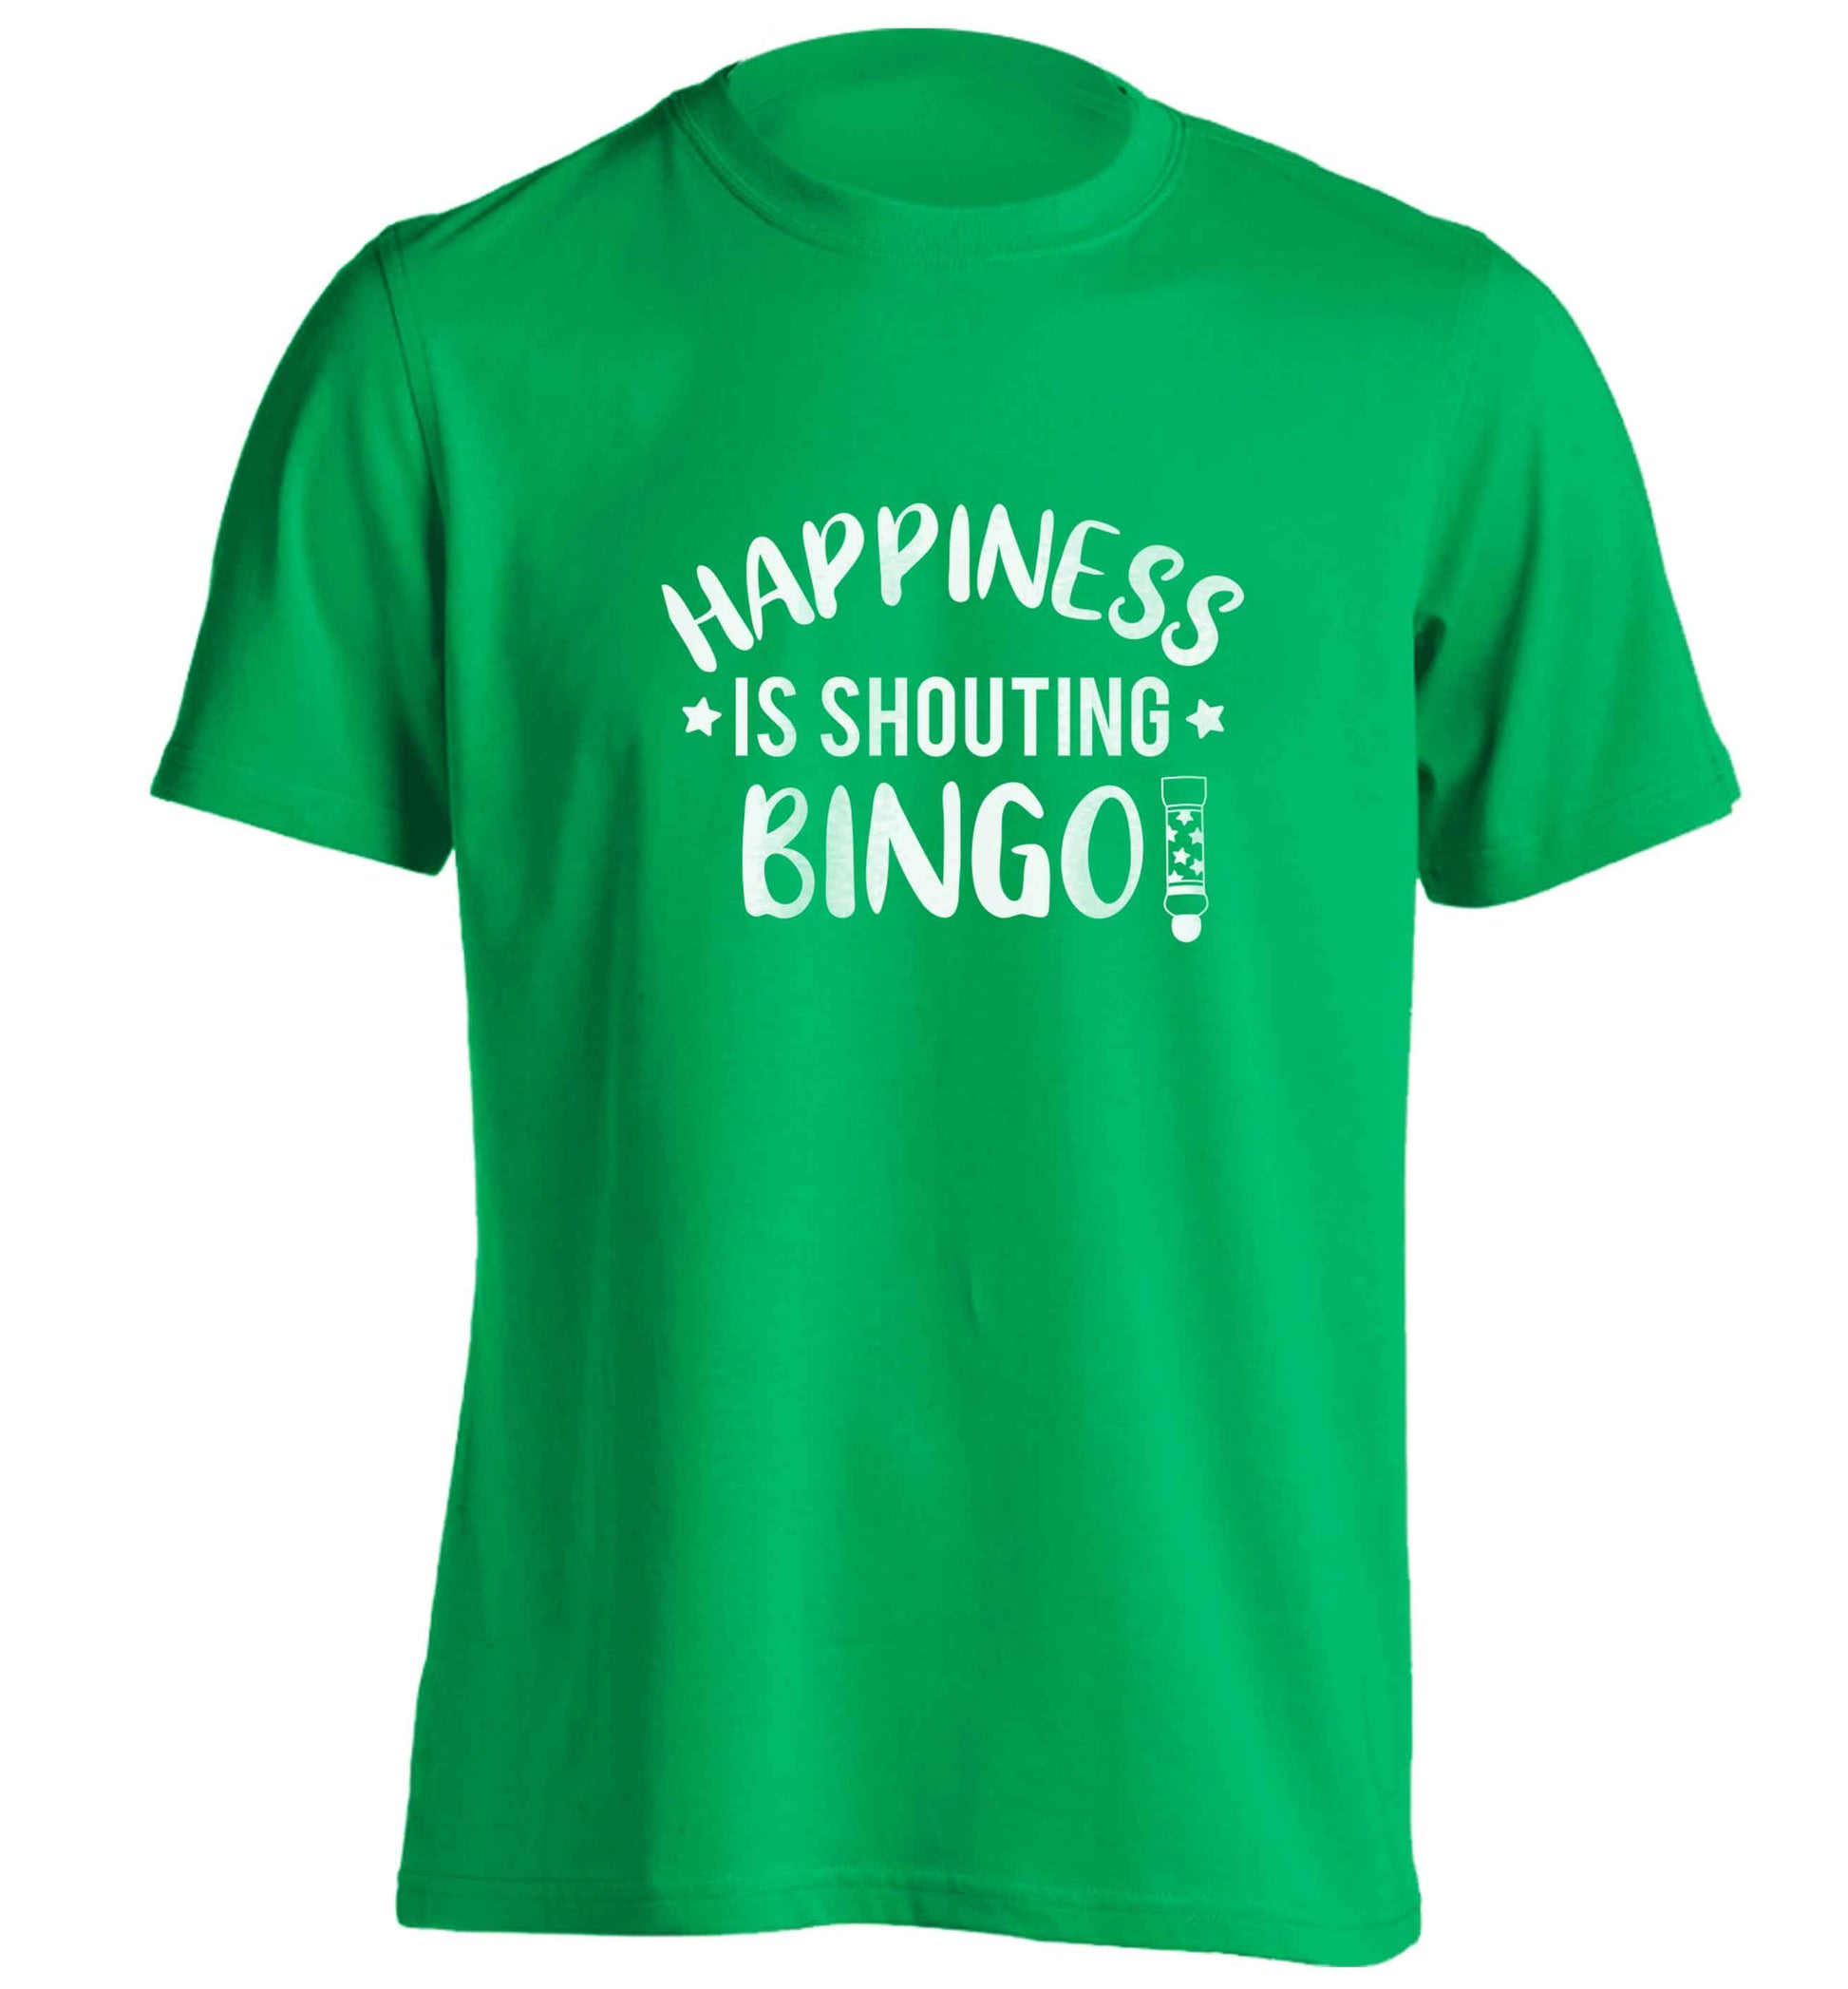 Happiness is shouting bingo! adults unisex green Tshirt 2XL